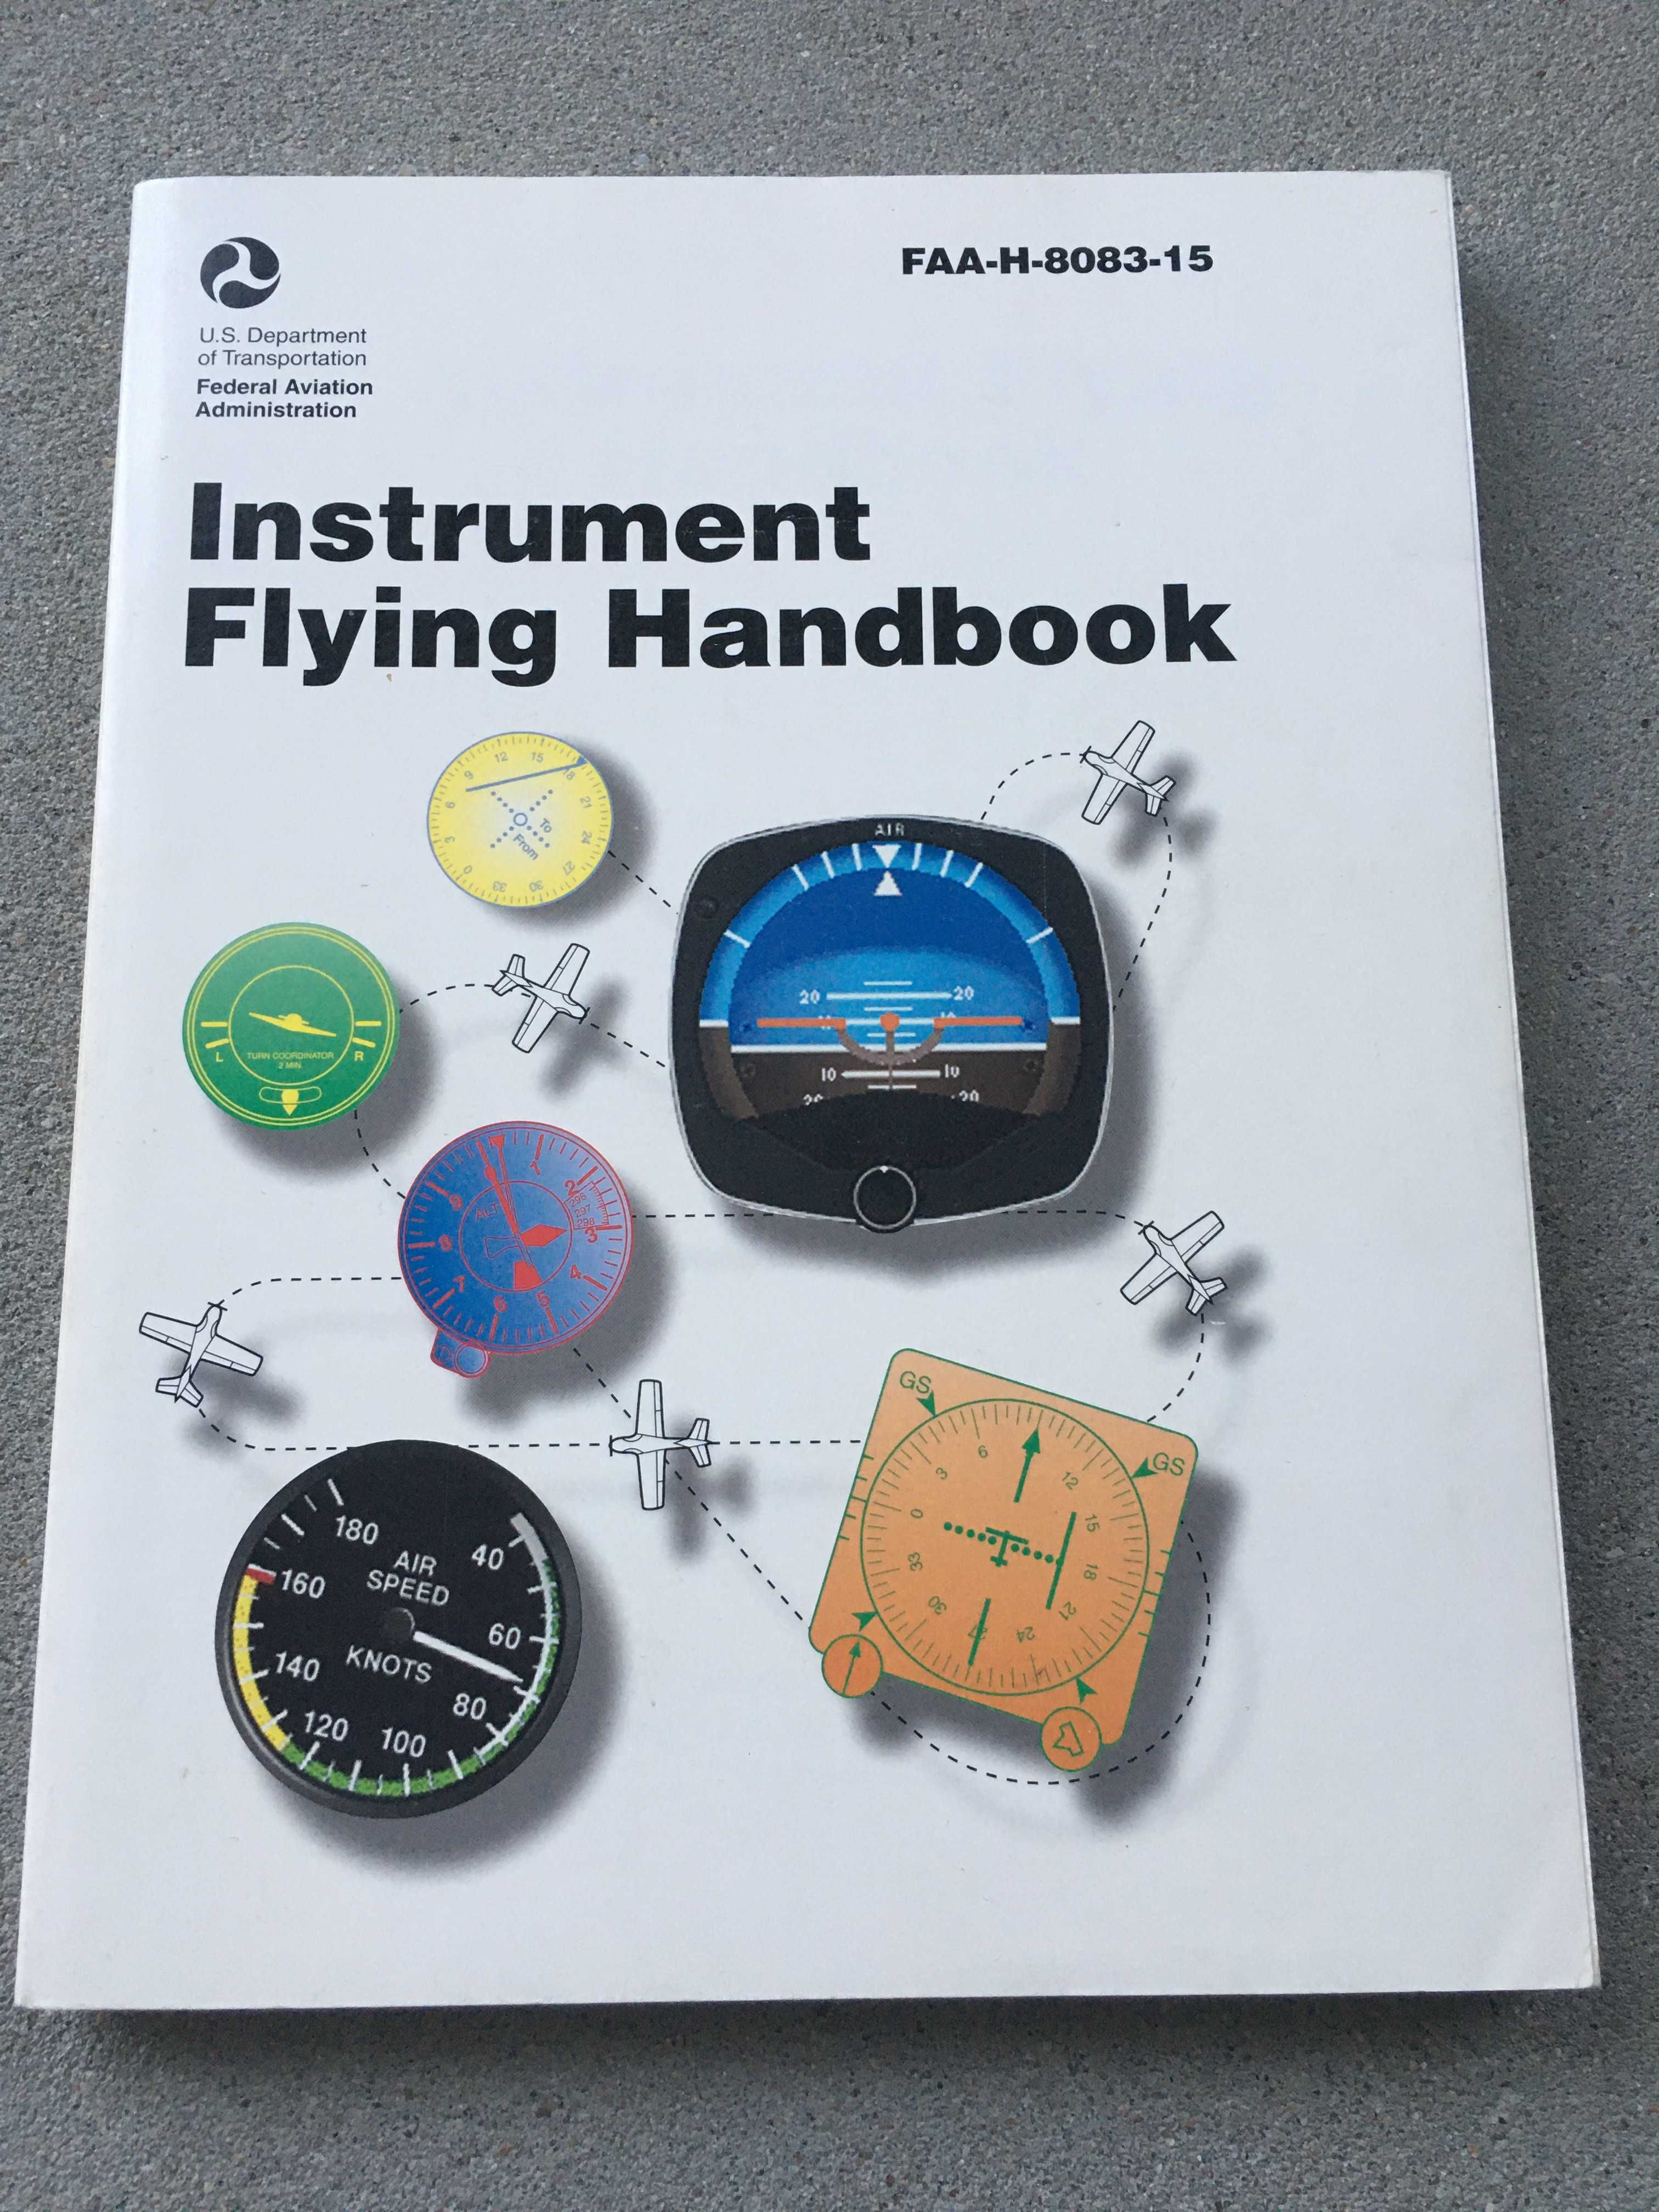 Podręcznik lotniczy FAA-H-8083-13 Instrument Flying Handbook IFR nowy